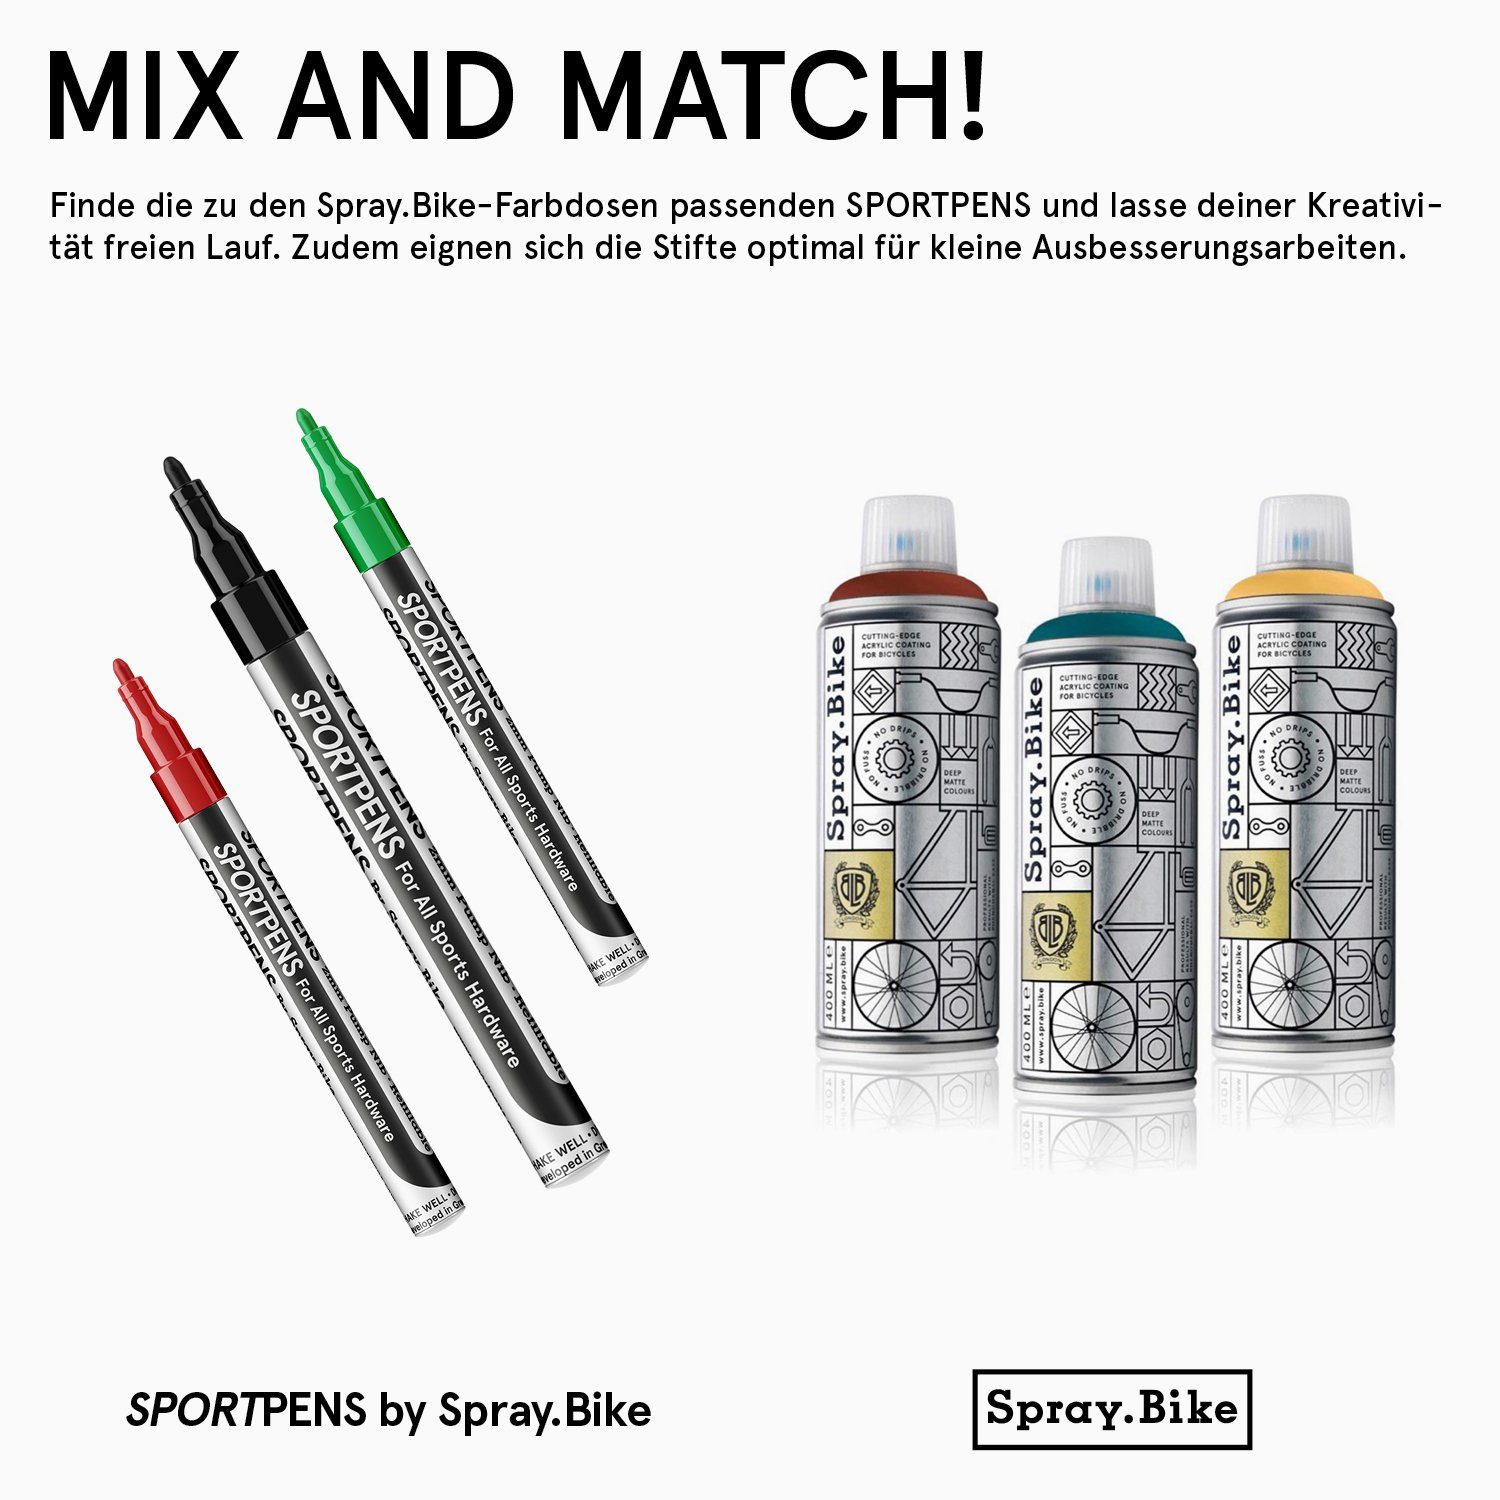 deckender Yellow Marker - Acrylstift Standard SportPens Spray.Bike wasserfester Lackmarker, Multimarker